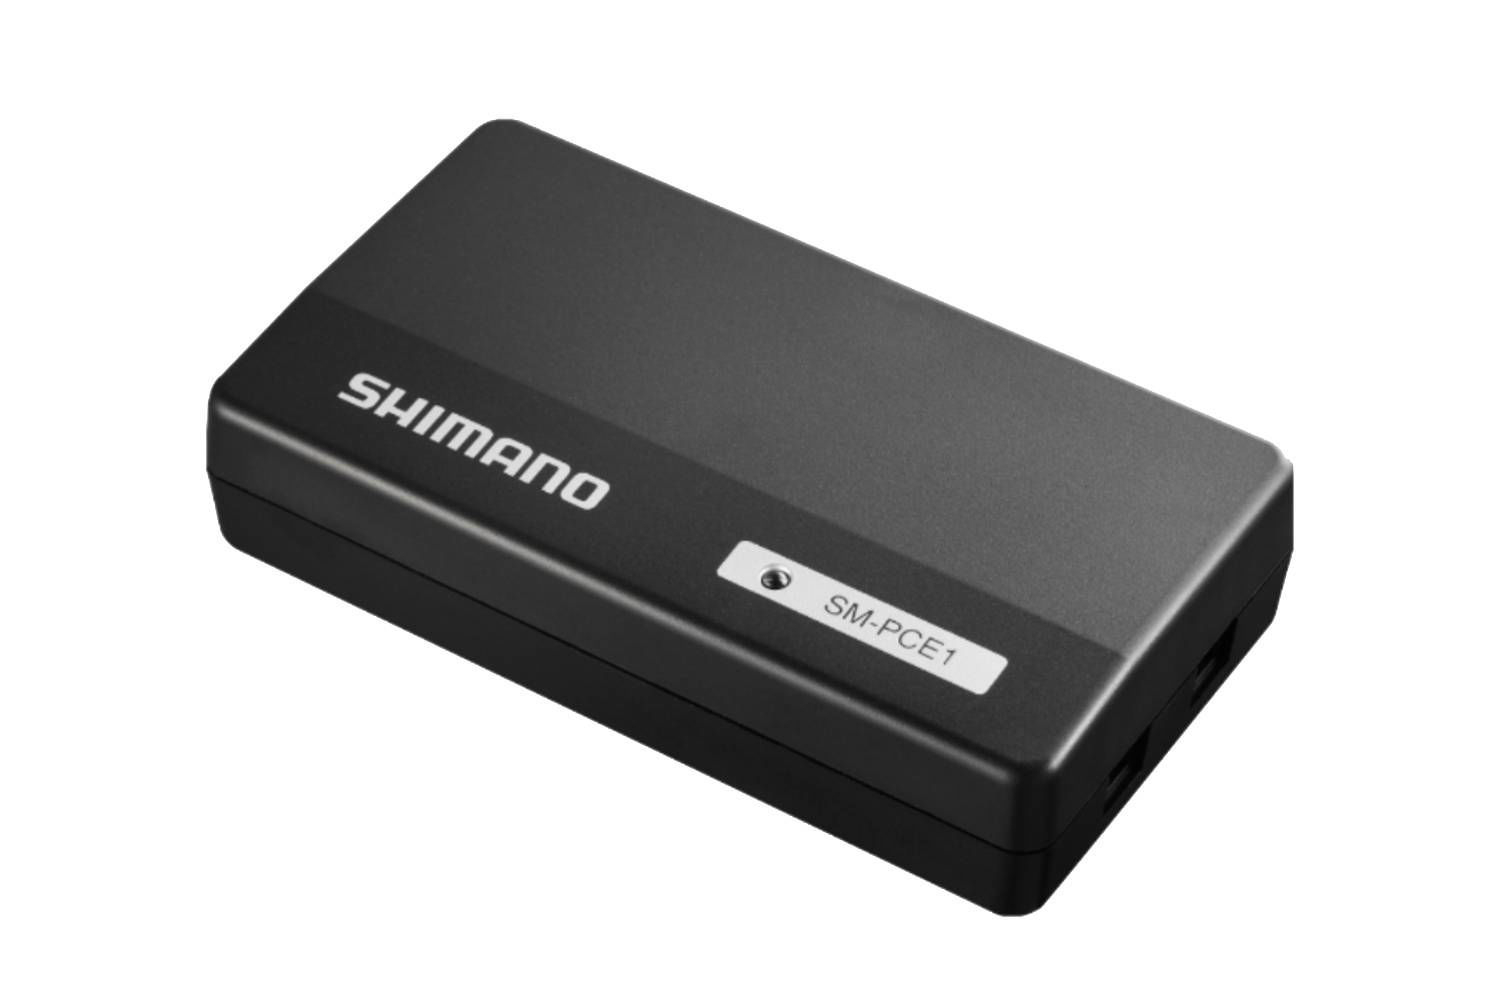 Immagine di Shimano Miniporta USB per collegamento al PC